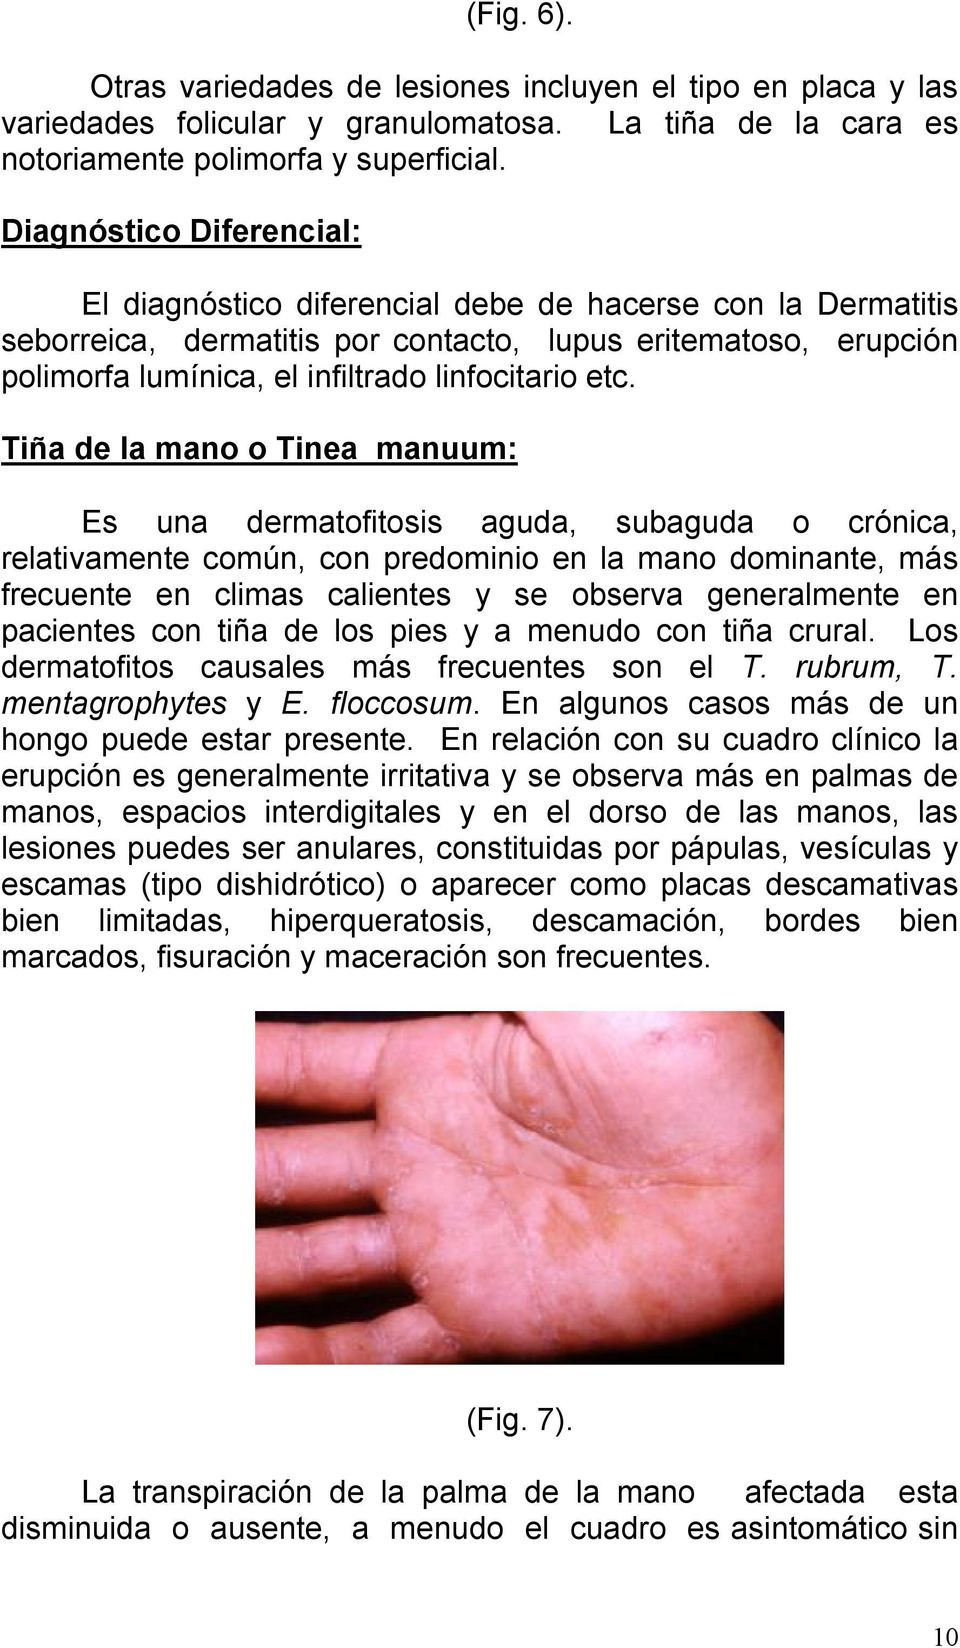 etc. Tiña de la mano o Tinea manuum: Es una dermatofitosis aguda, subaguda o crónica, relativamente común, con predominio en la mano dominante, más frecuente en climas calientes y se observa